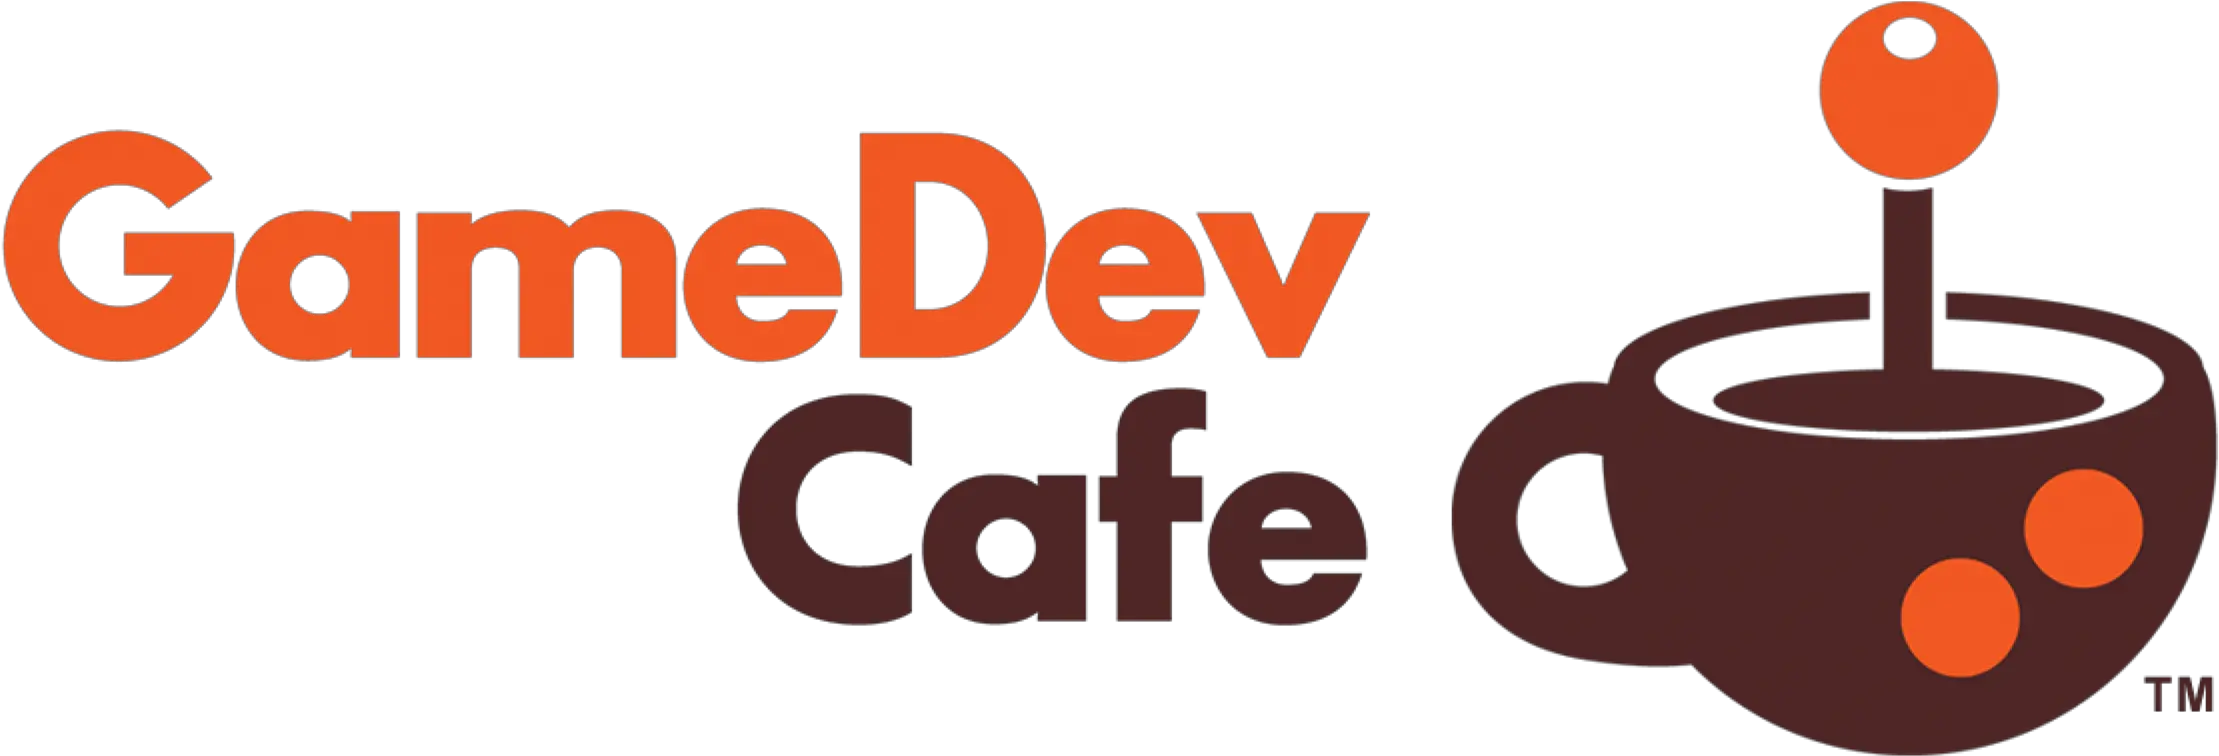 Download Gamedev Cafe Logo Game Dev Logo Game Dev Community Png Cafe Logos